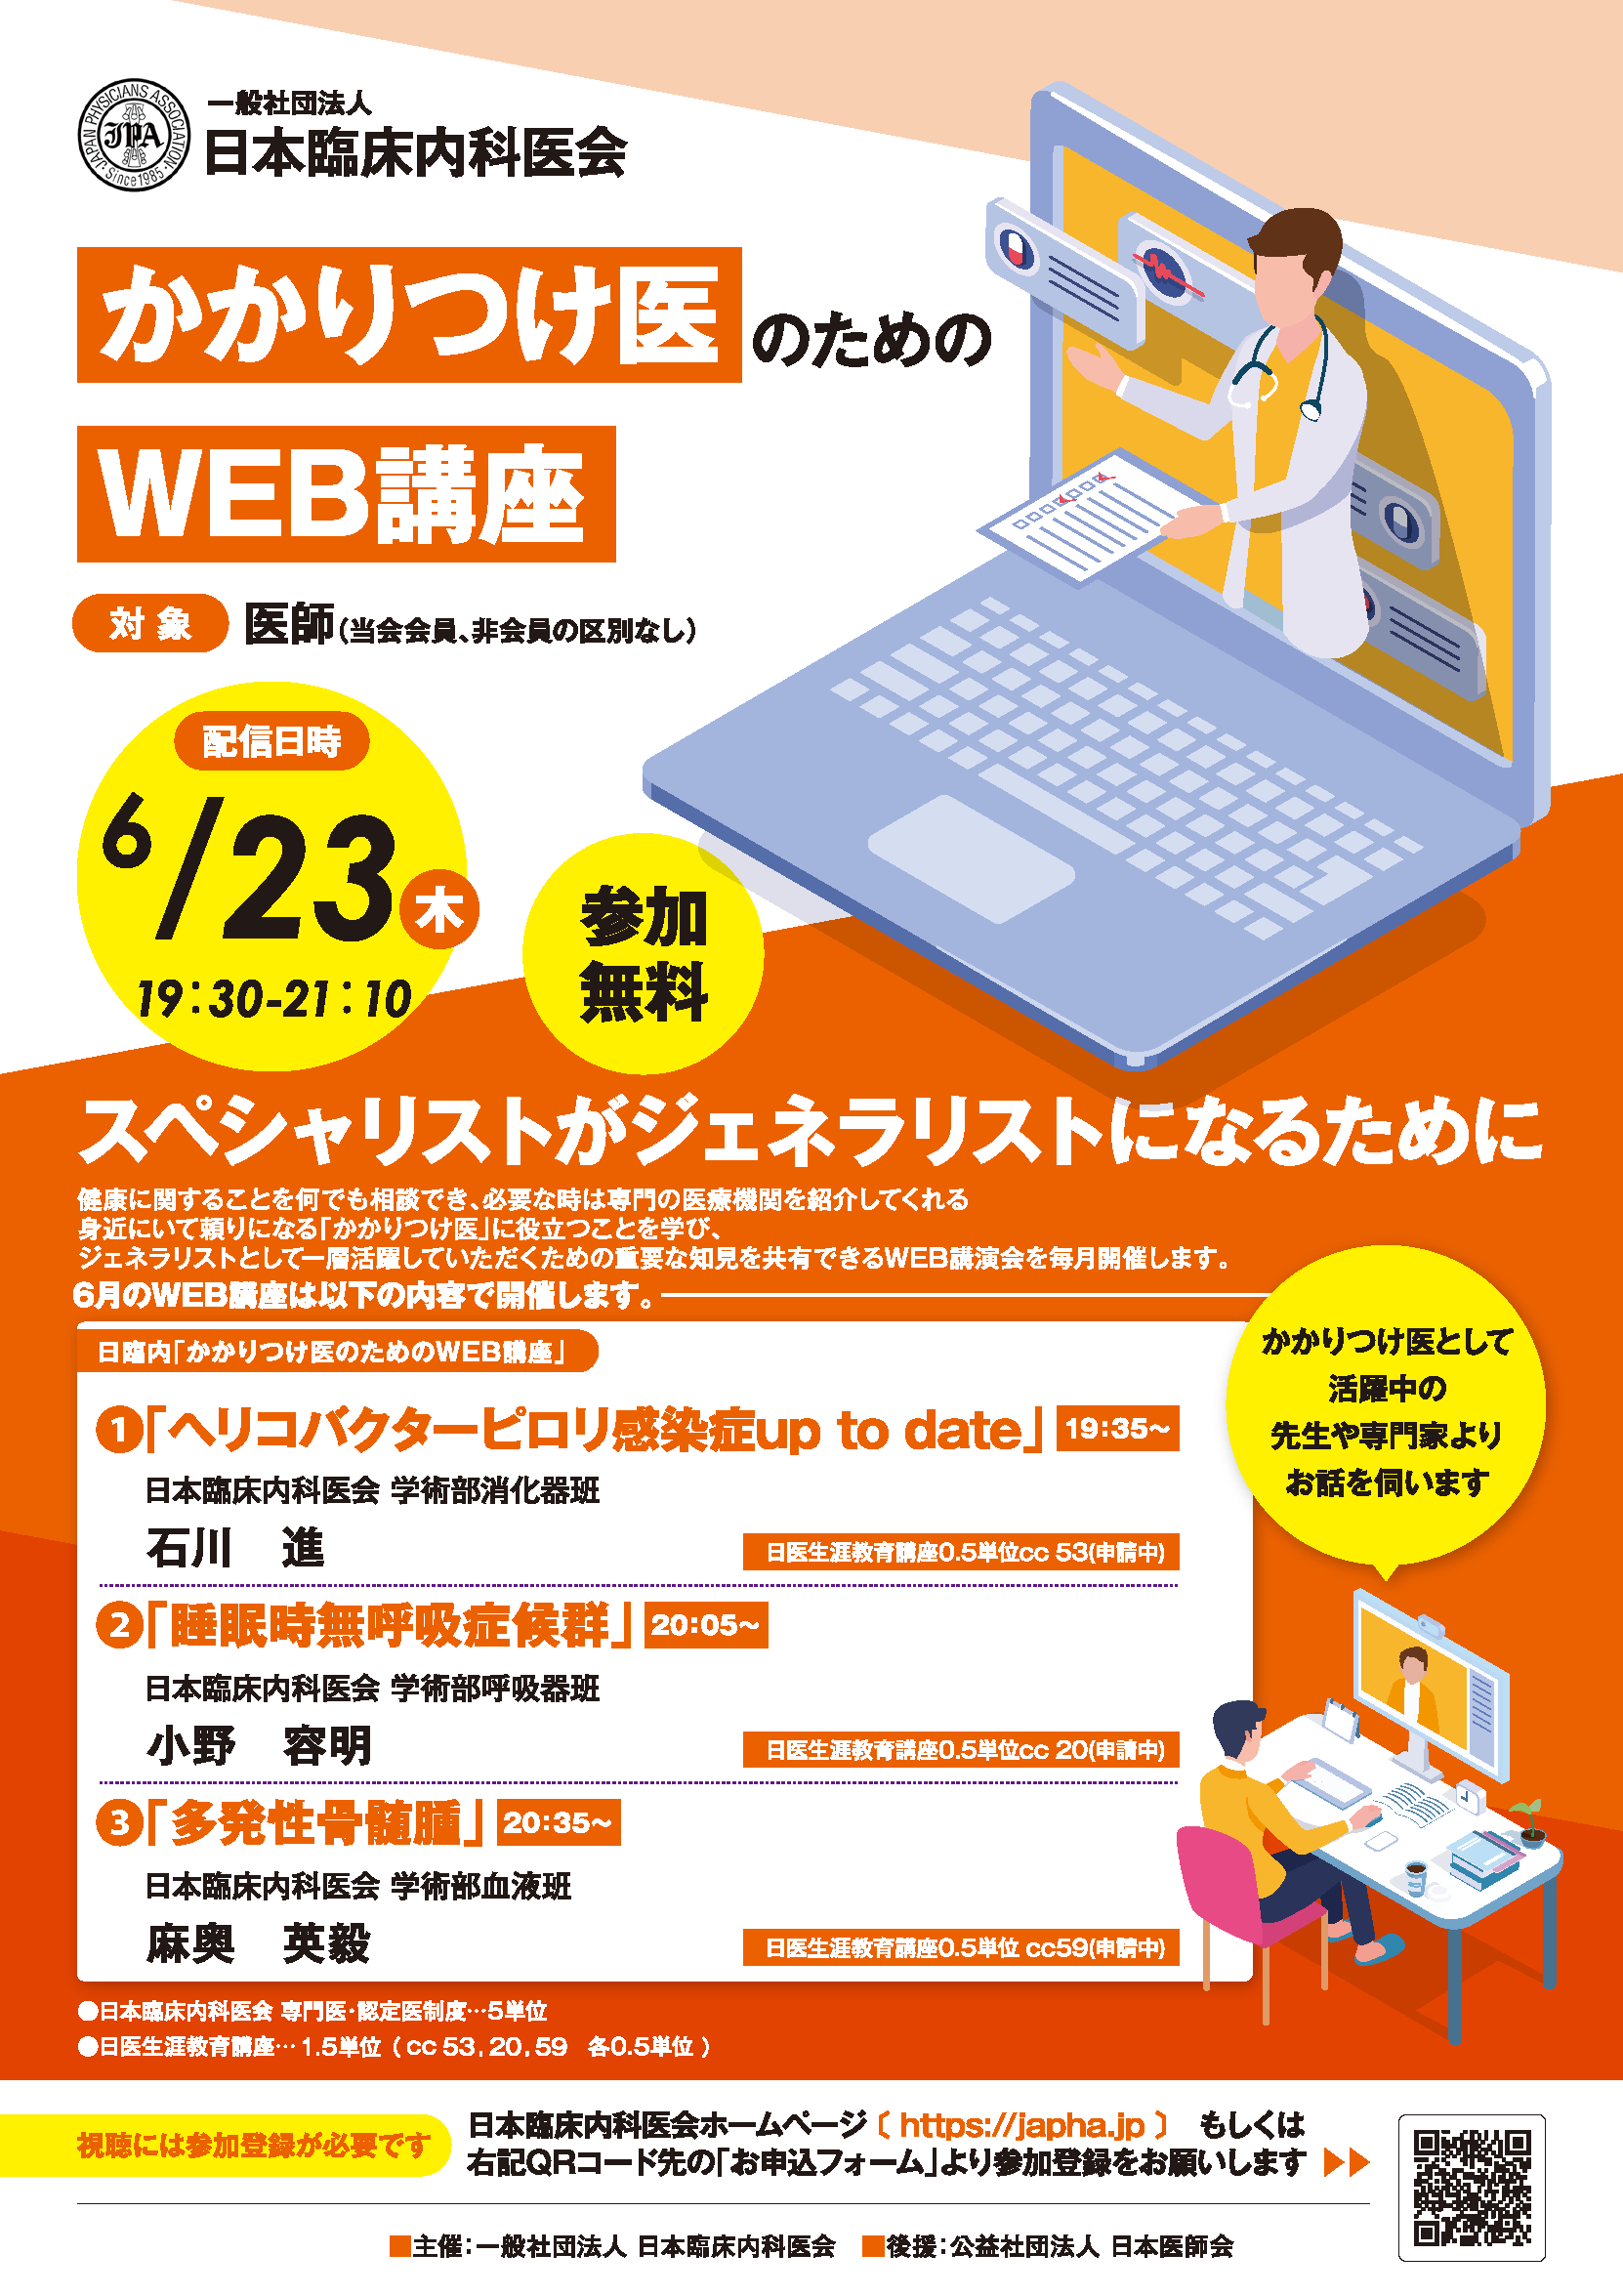 japha-web_A4_2112.png